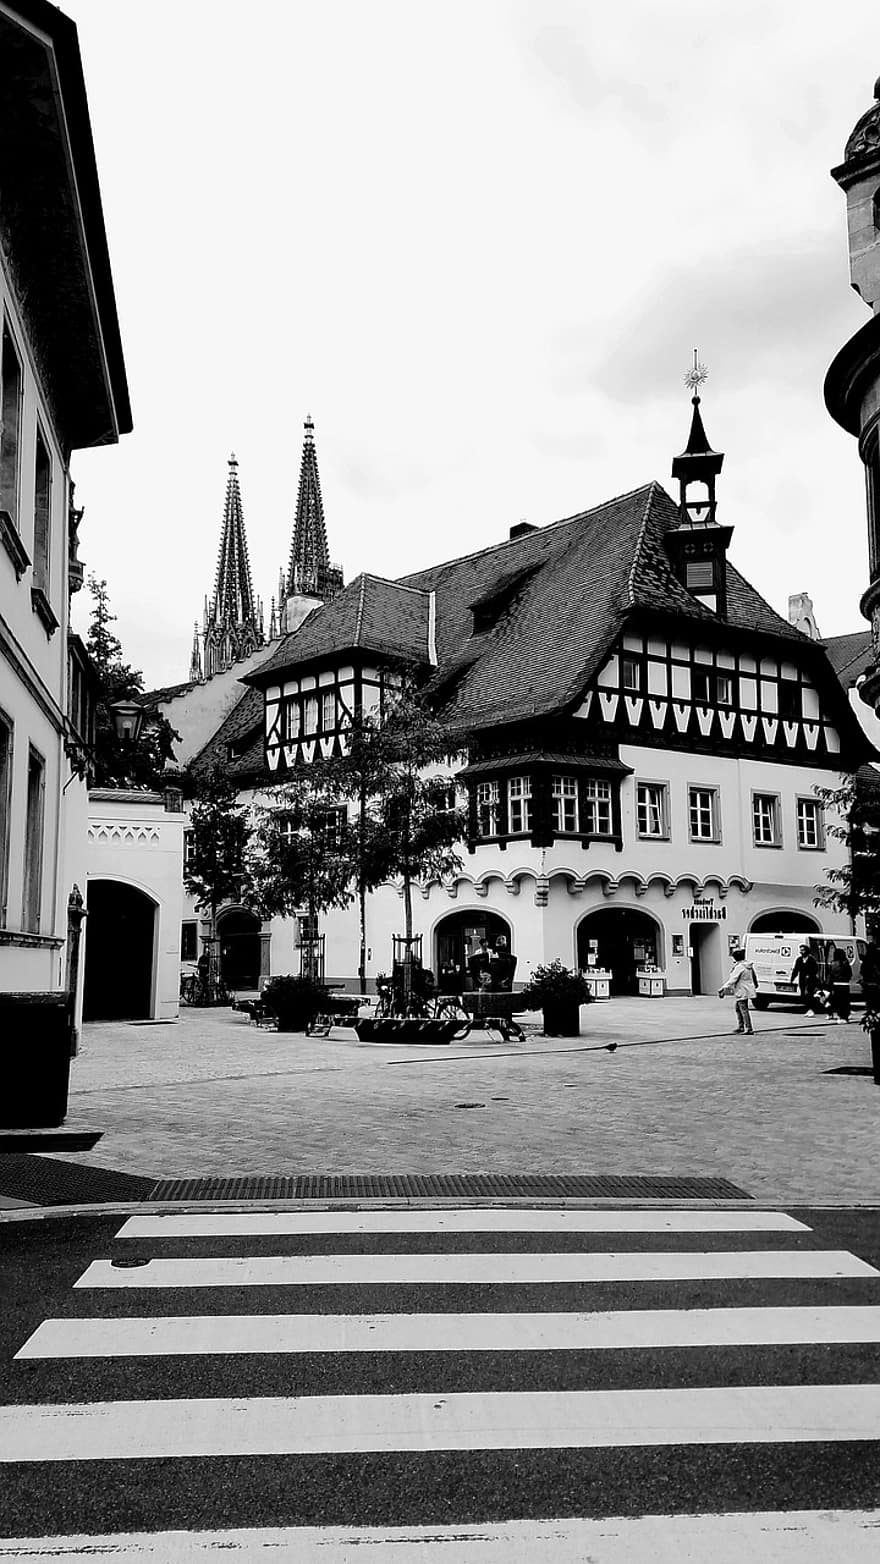 ทางม้าลาย, โบสถ์, อาคาร, Dom, Regensburg, บาวาเรีย, เมือง